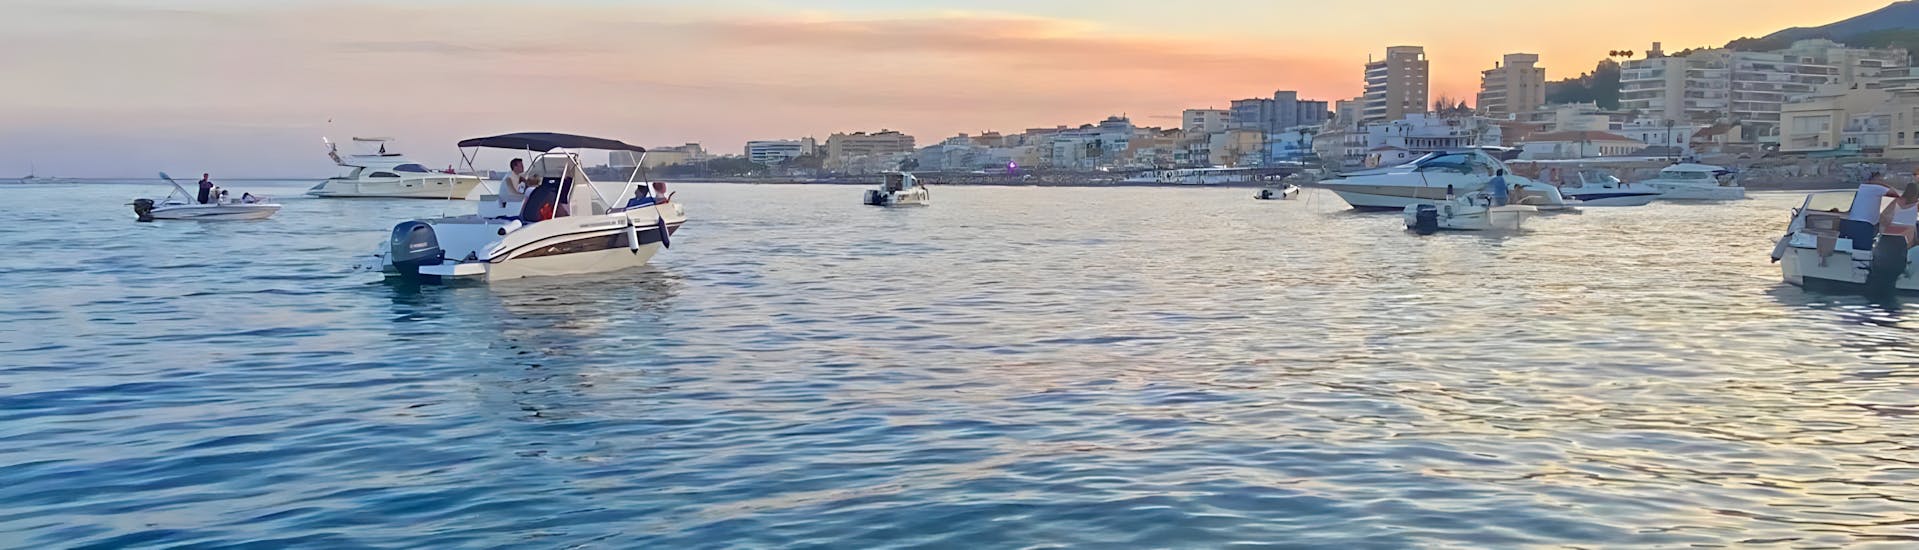 Sonnenuntergang im Hafen von Bnealmádena, wo Ihr den Bootsverleih mit Führerschein von Oceanautic Benalmádena für bis zu 7 Personen findet.